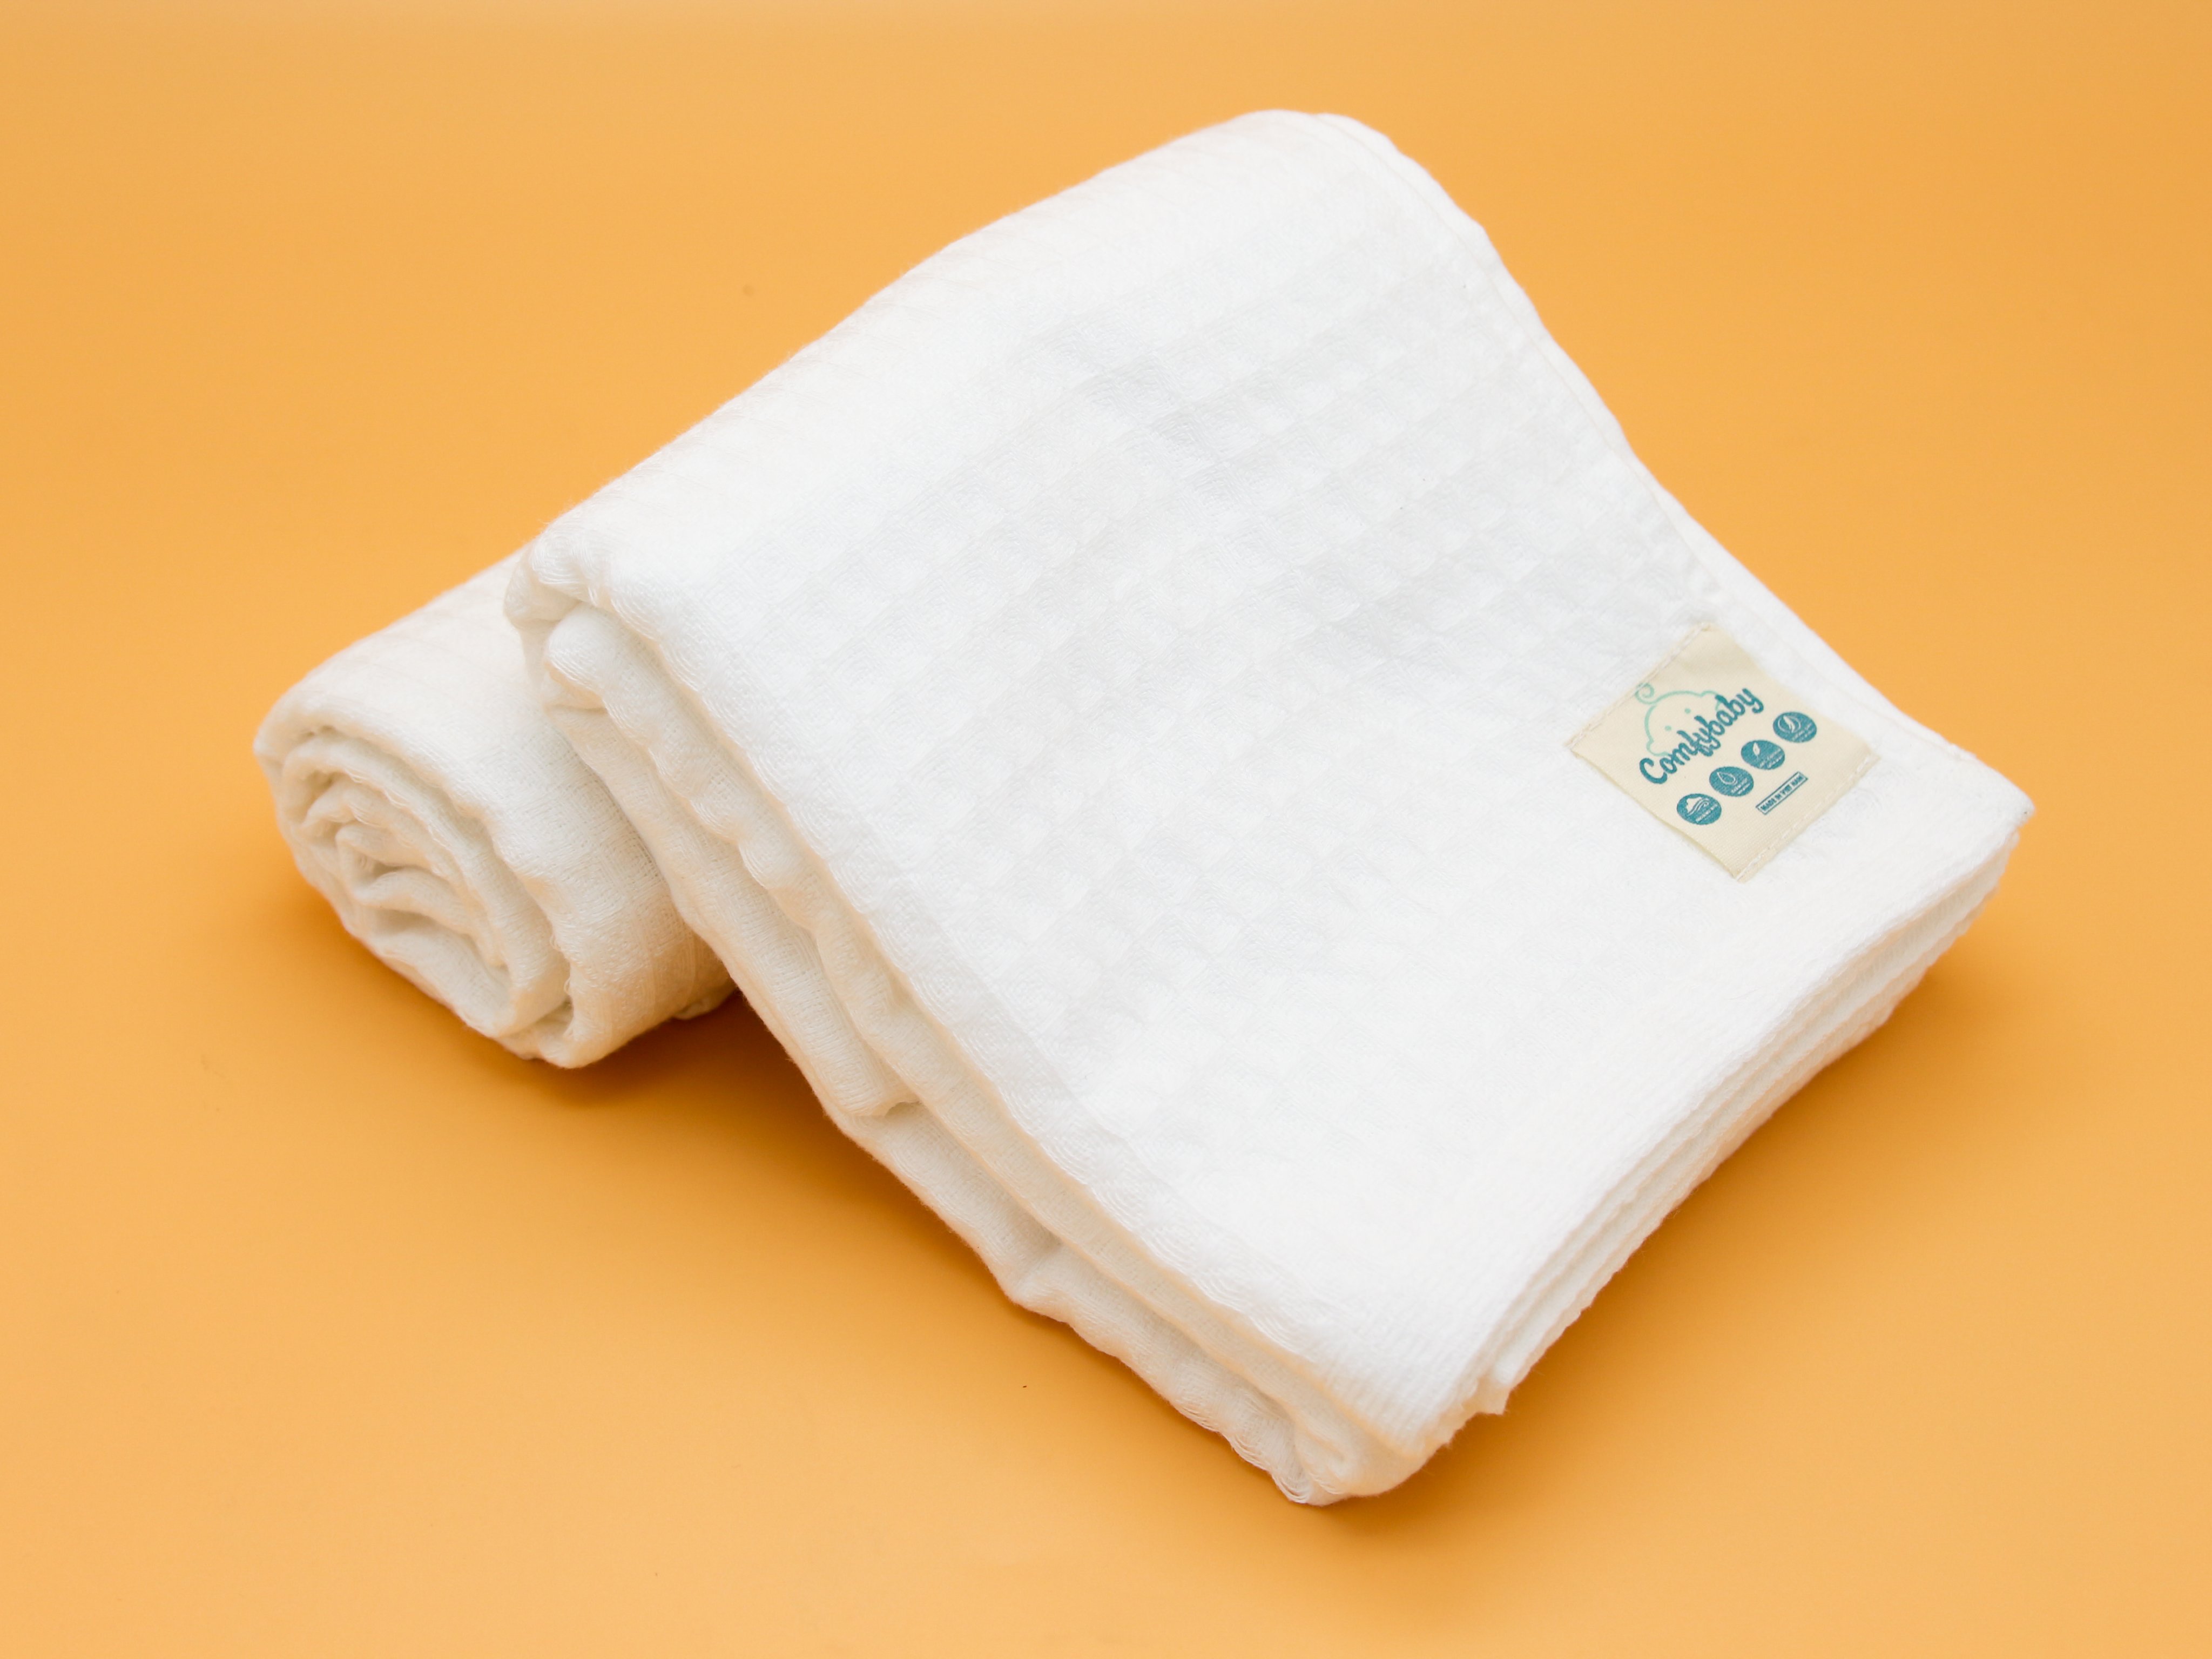 Made in Việt Nam - Set 5 khăn đa năng: Khăn sữa, khăn mặt 100% Cotton cao cấp Comfybaby hàng xuất khẩu - đồ dùng phòng tắm dành cho Mẹ & Bé CF1020-KM01-W kích thước 34x34cm,